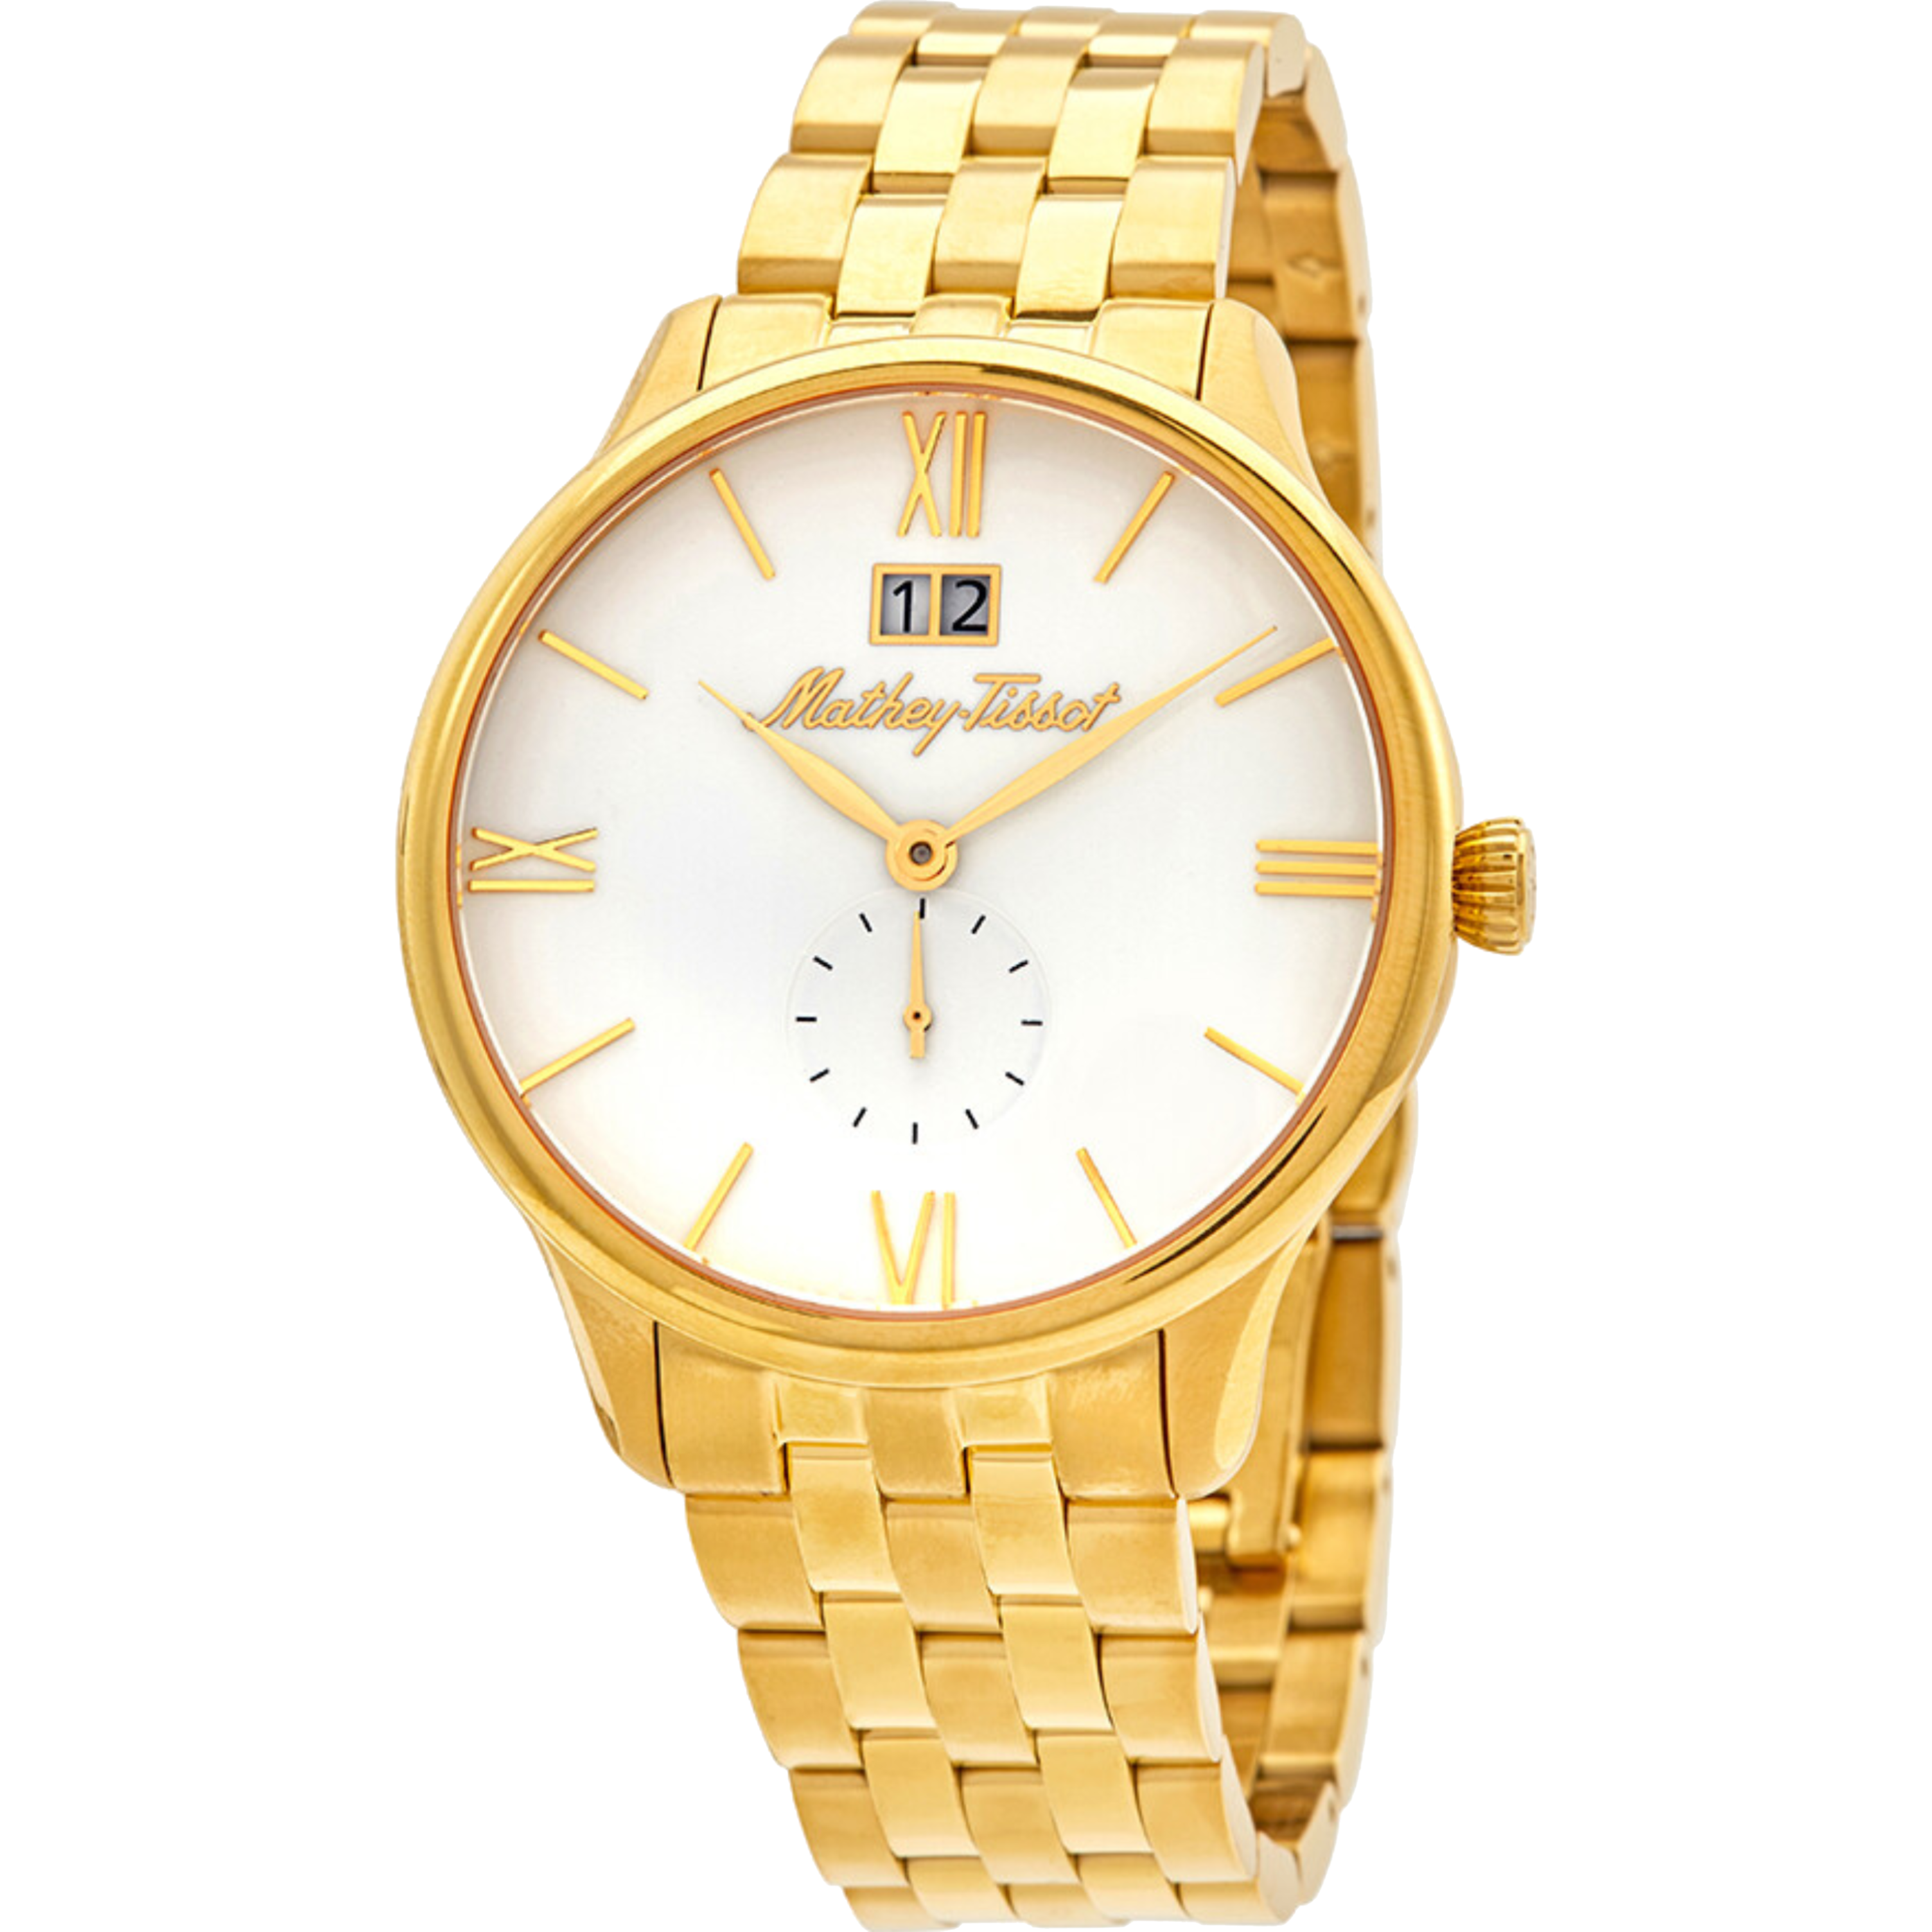 שעון יד לגבר Mathey Tissot H1886MPI 42mm צבע זהב/זכוכית ספיר - אחריות לשנה ע"י היבואן